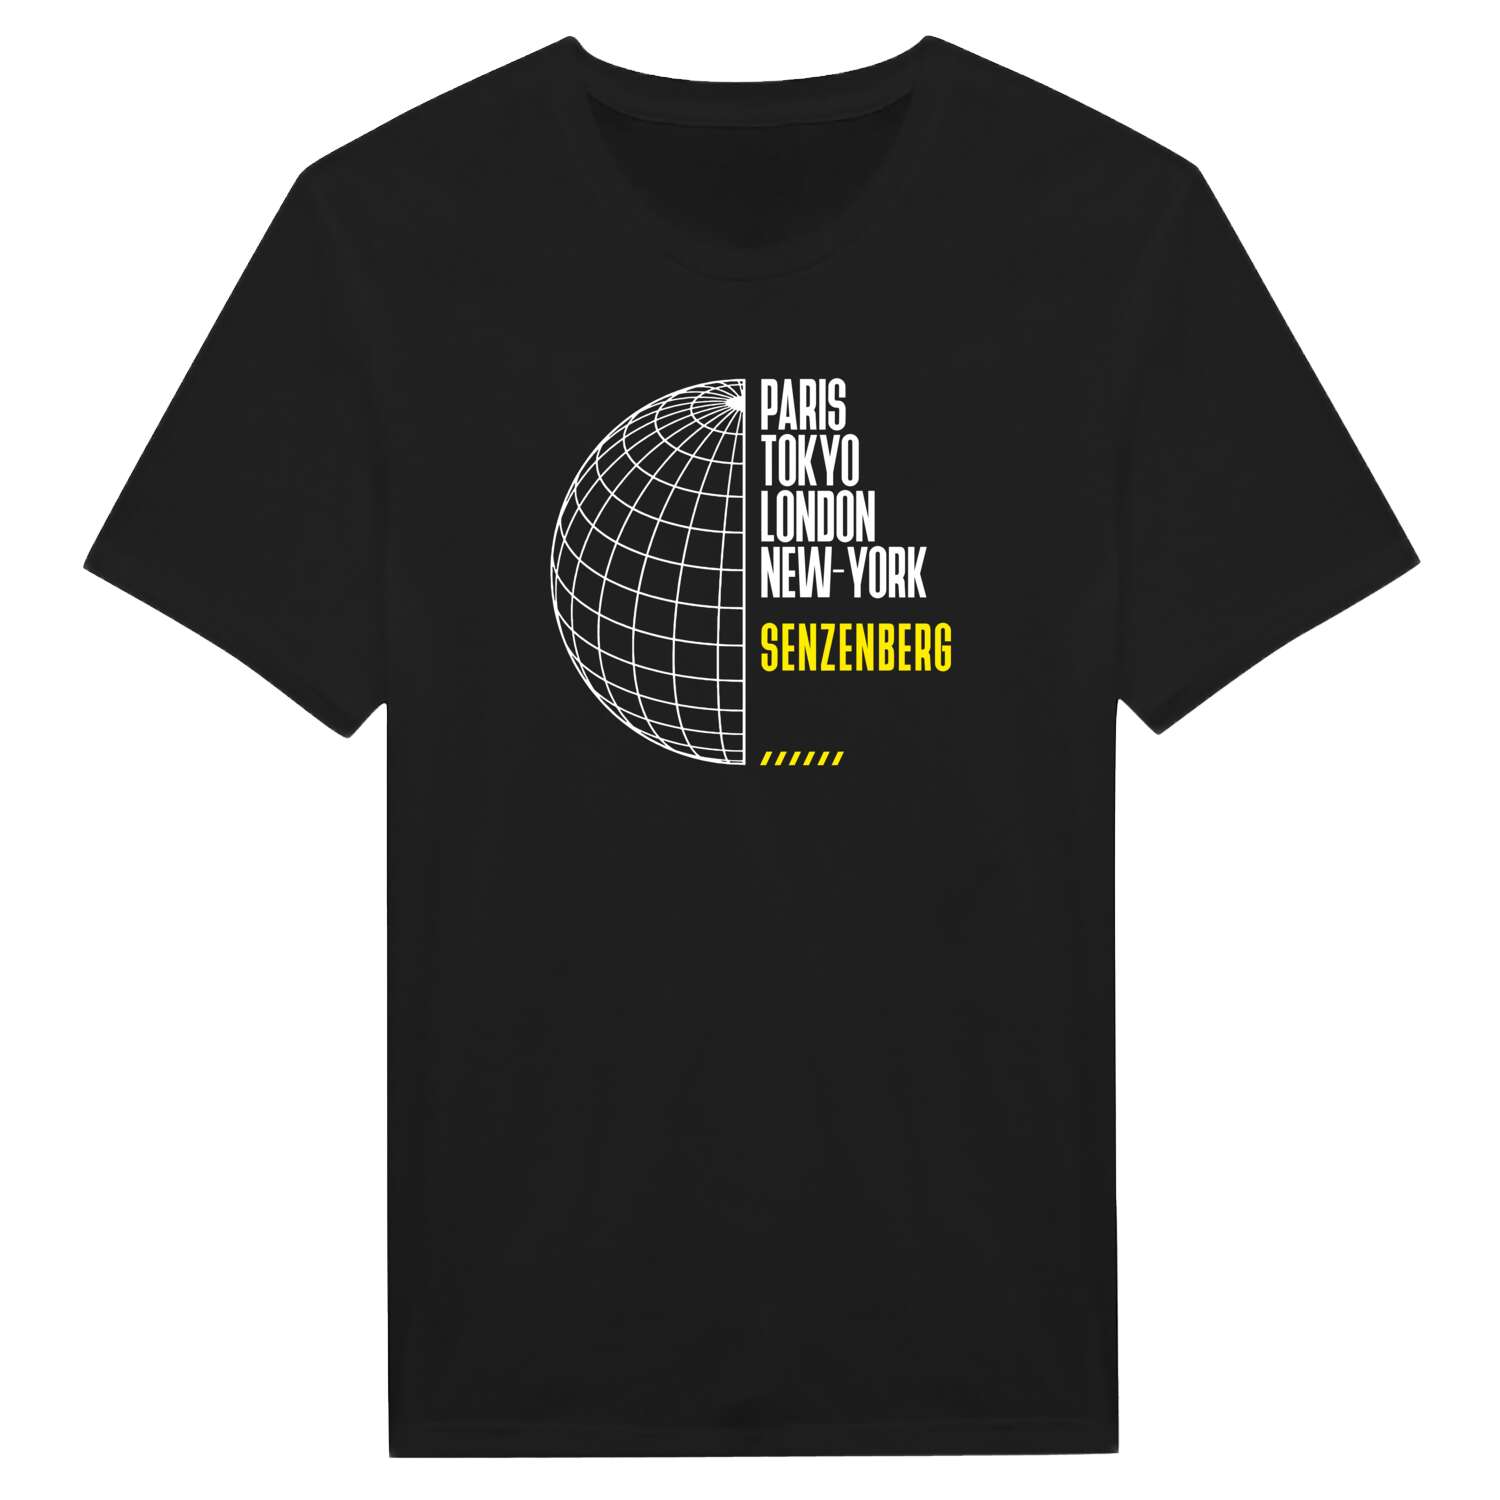 Senzenberg T-Shirt »Paris Tokyo London«